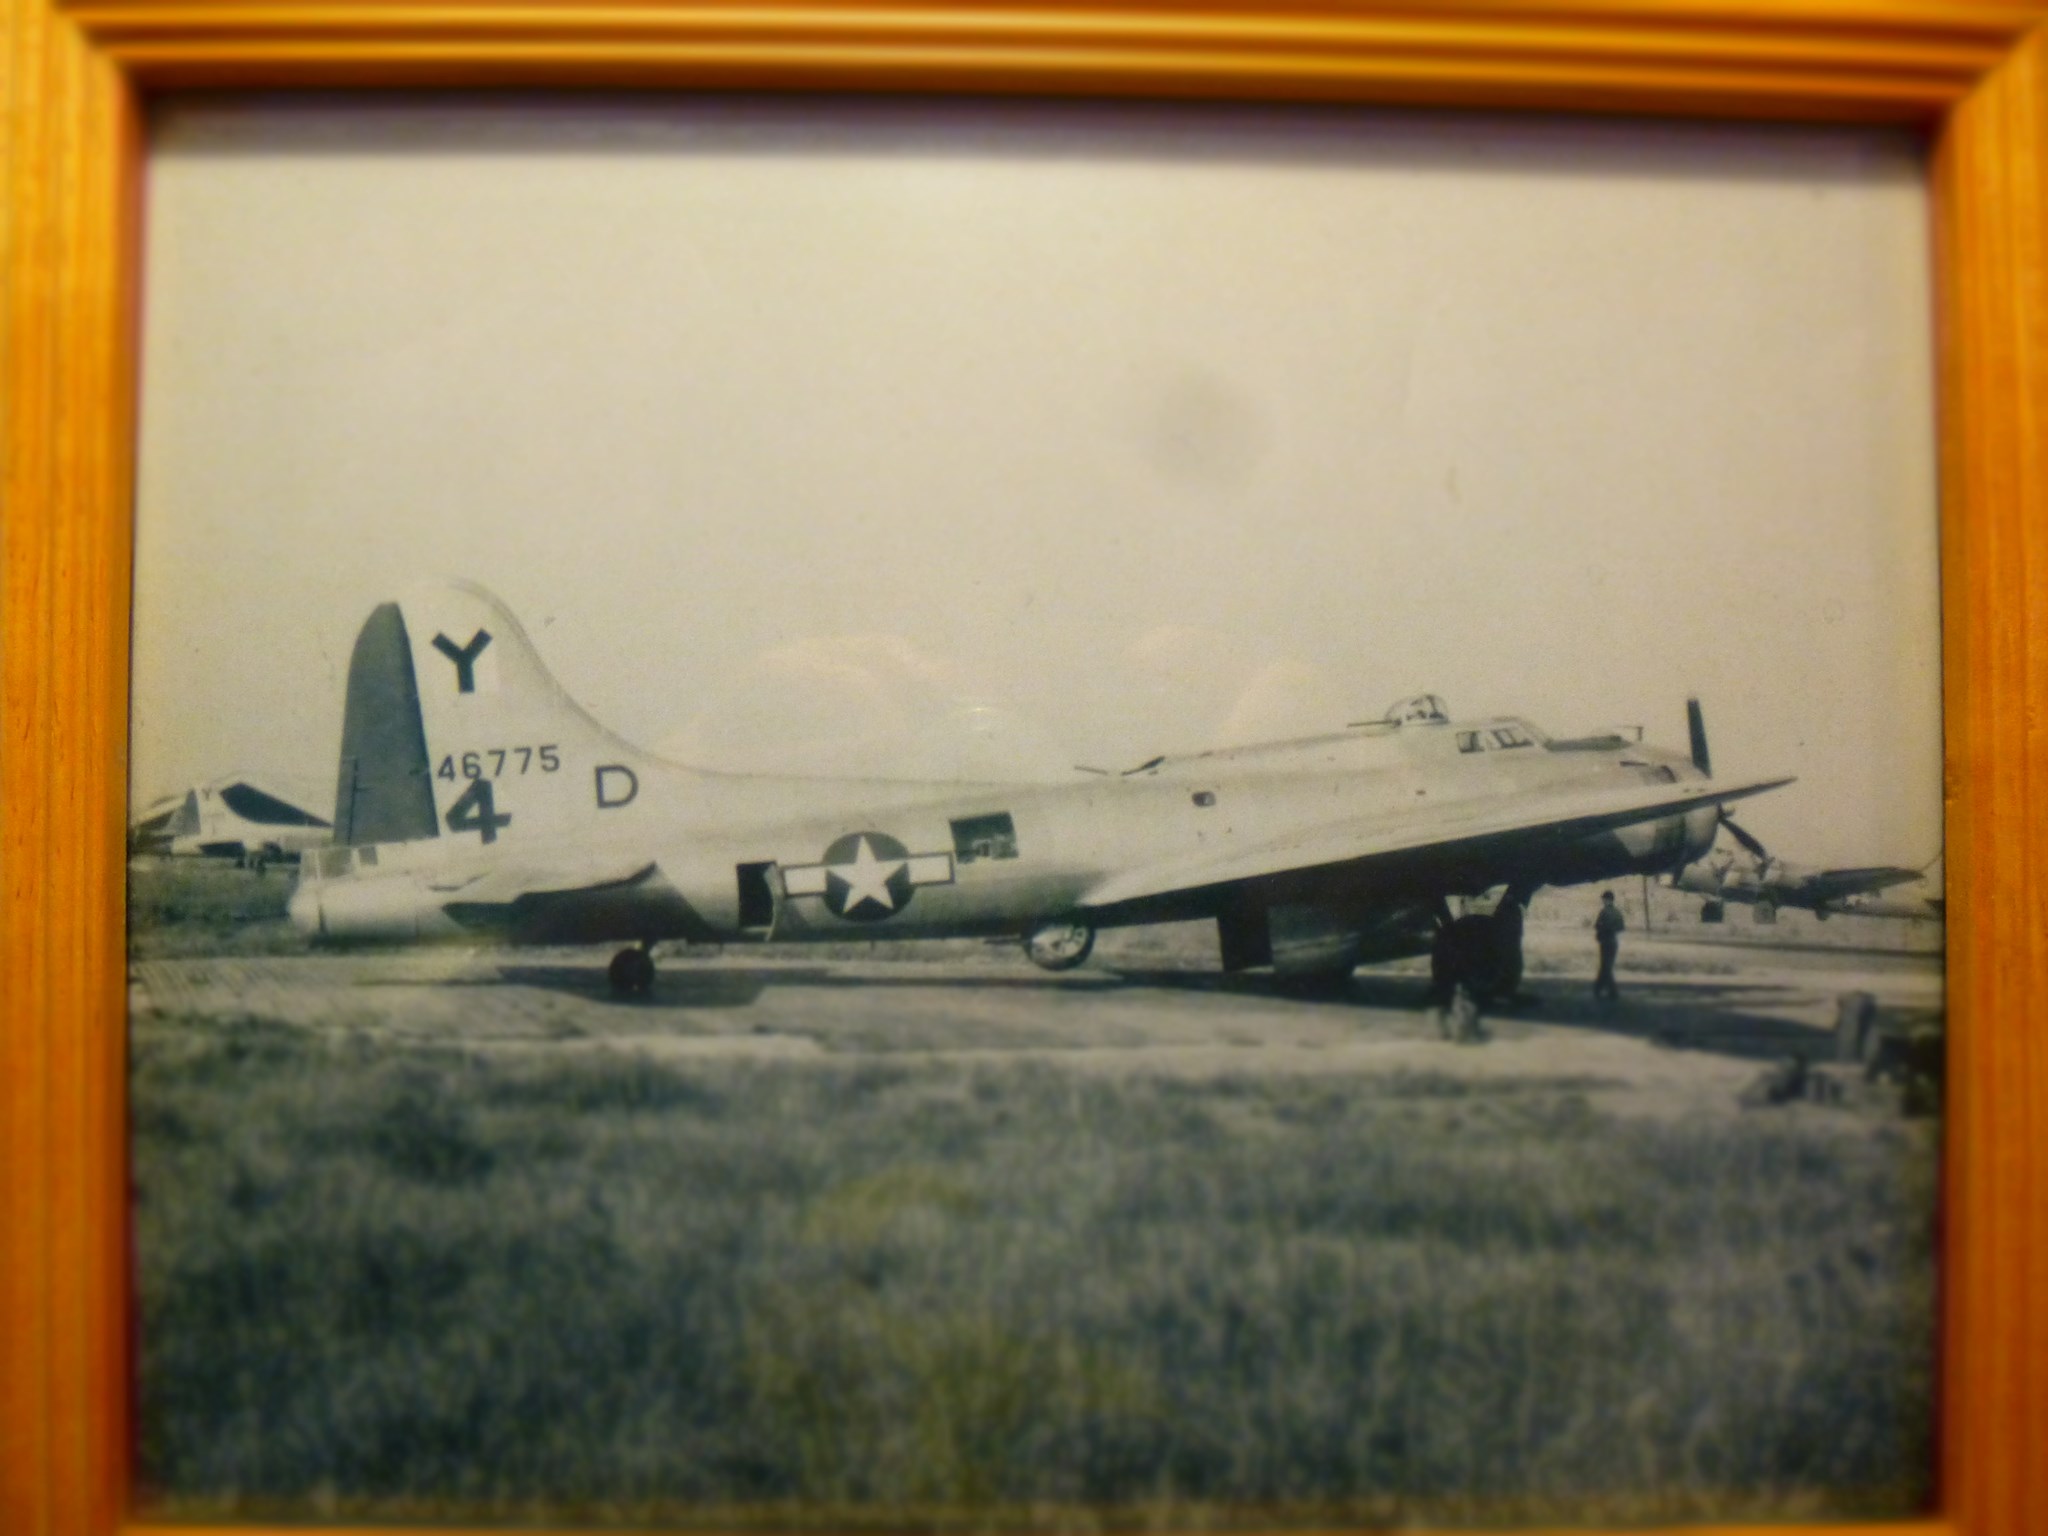 B-17 #44-6775